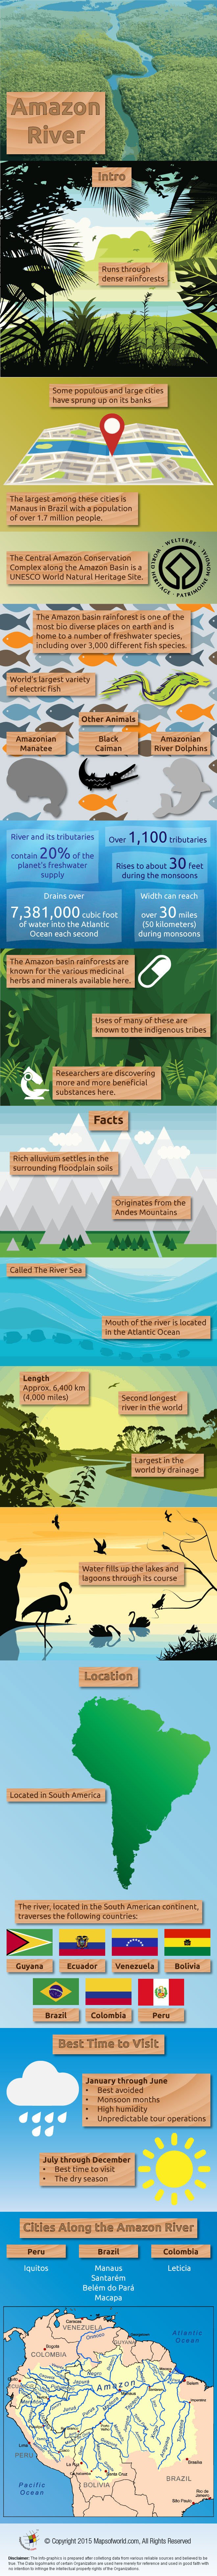 Amazon River Infographic